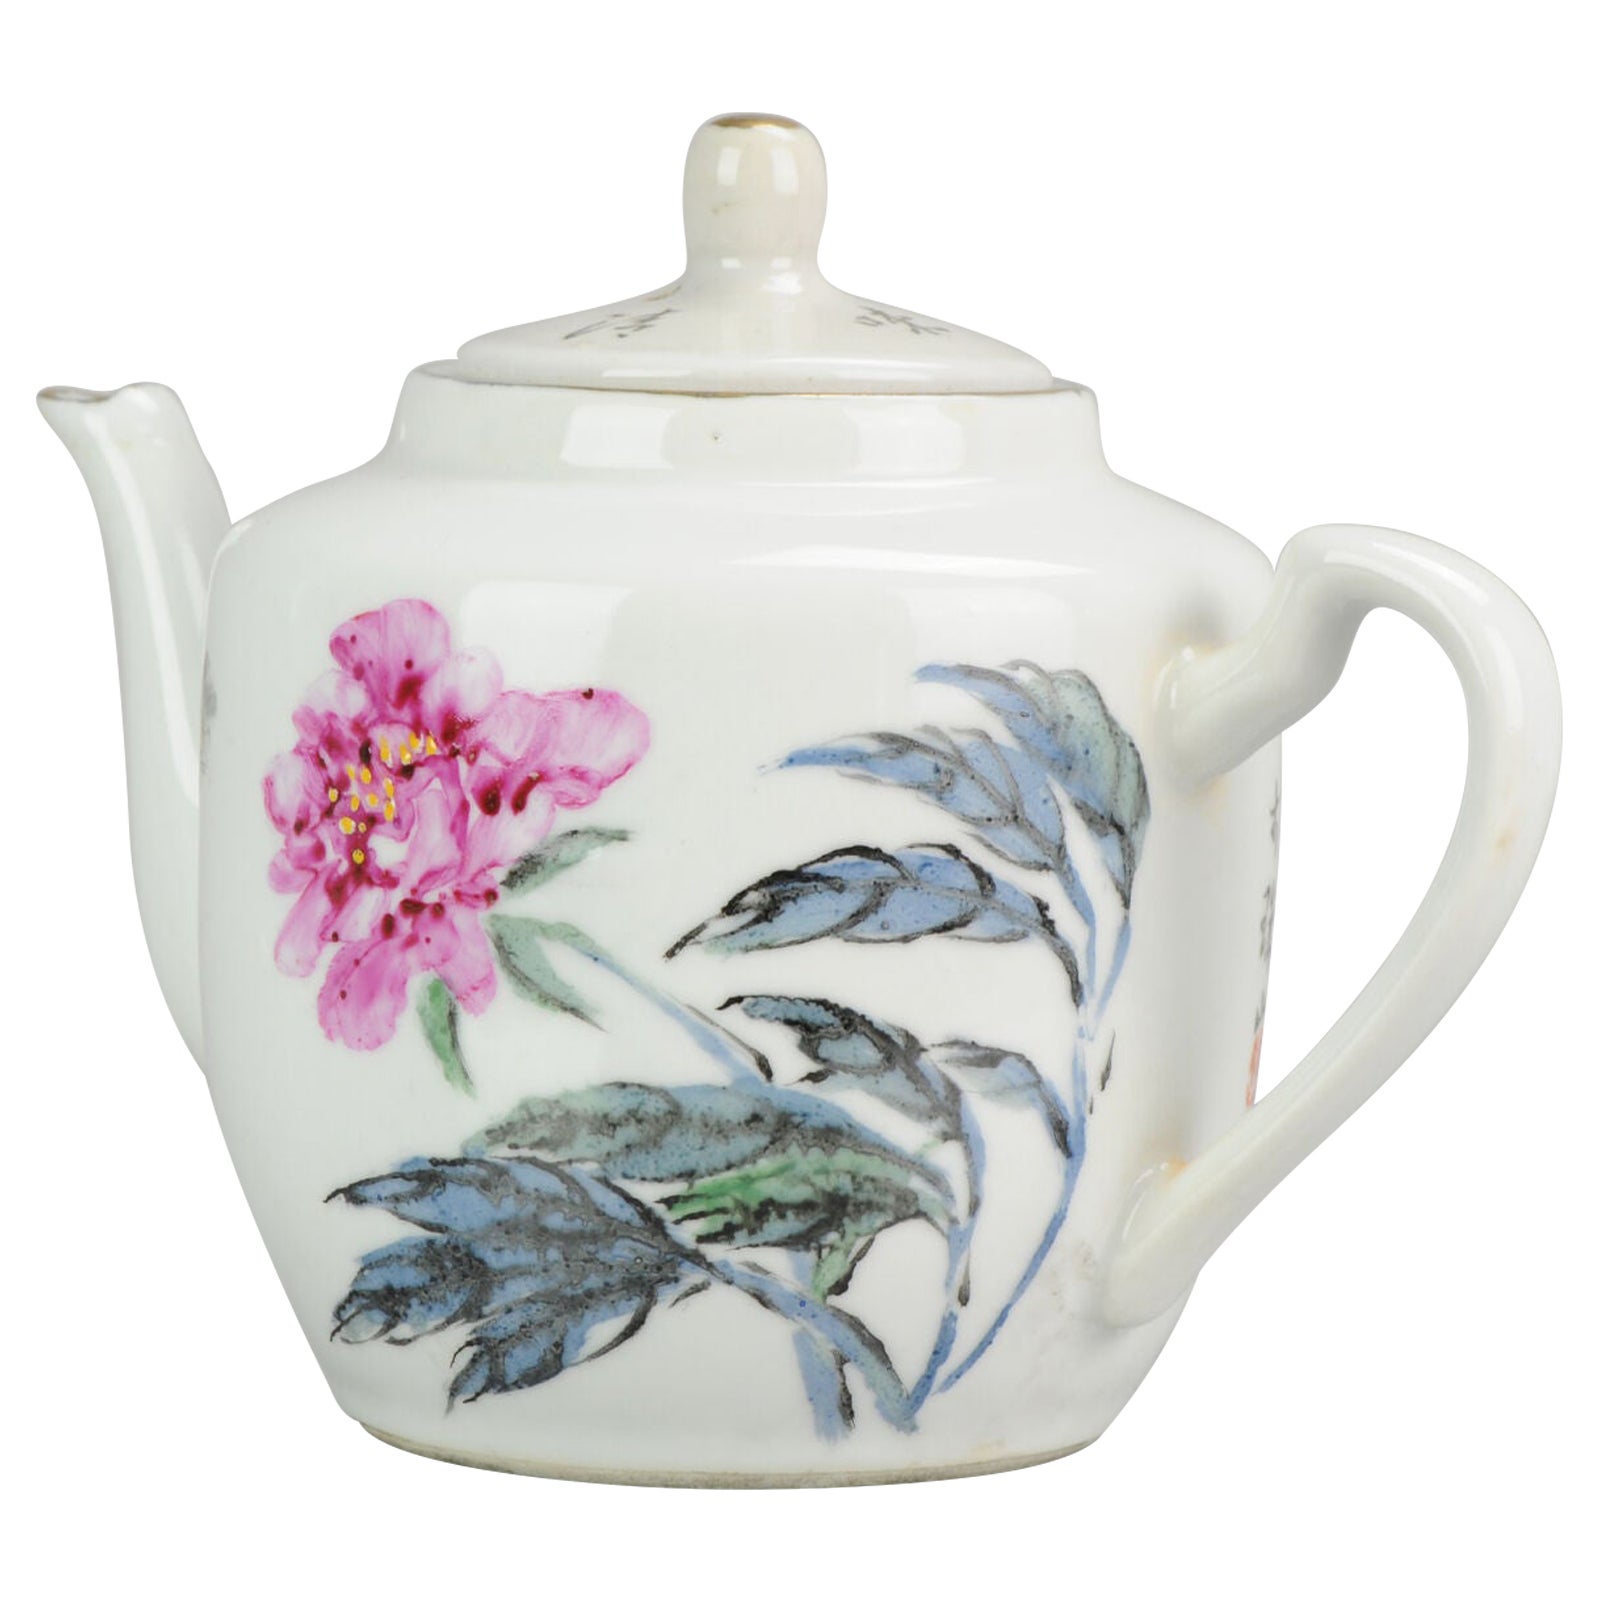 Chinesische Proc Fencai-Teekanne aus Porzellan mit Blumen und Gedicht, Proc Fencai, 1980/1990